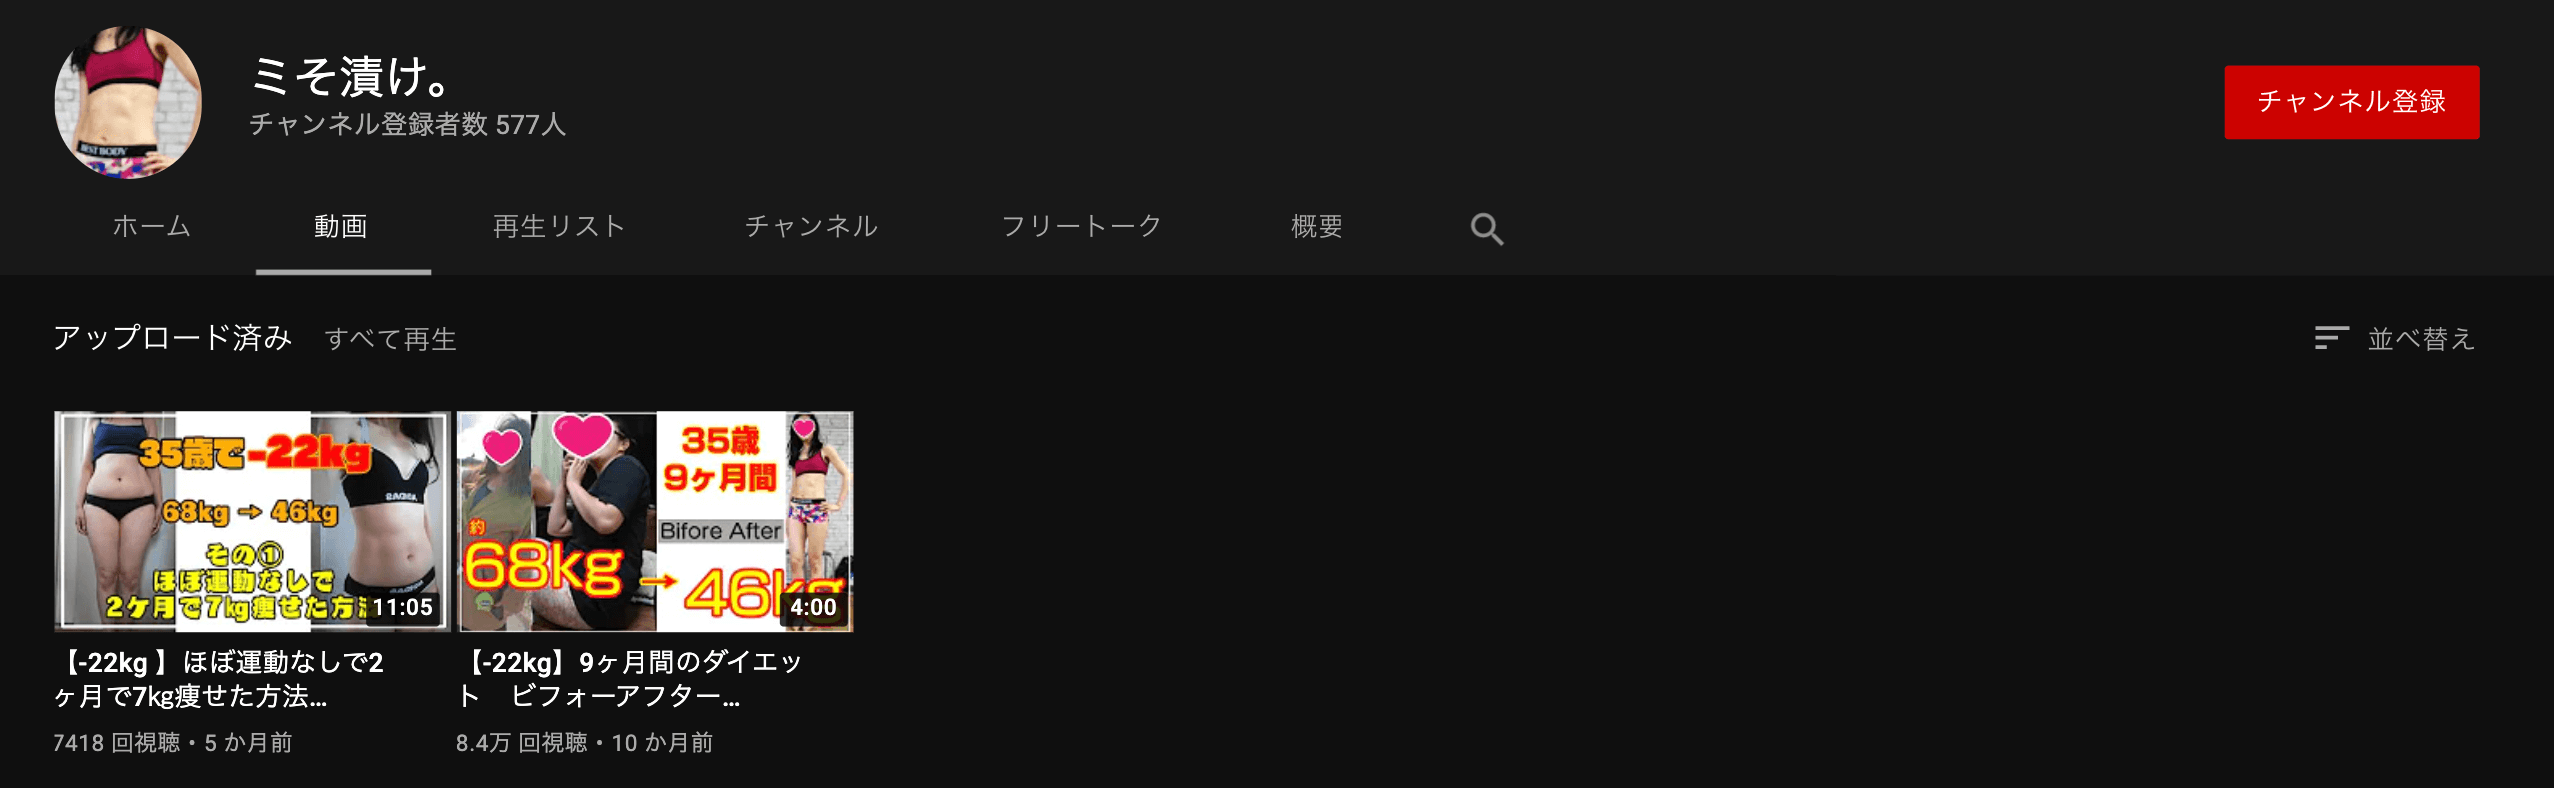 youtube-misoxuke-channel